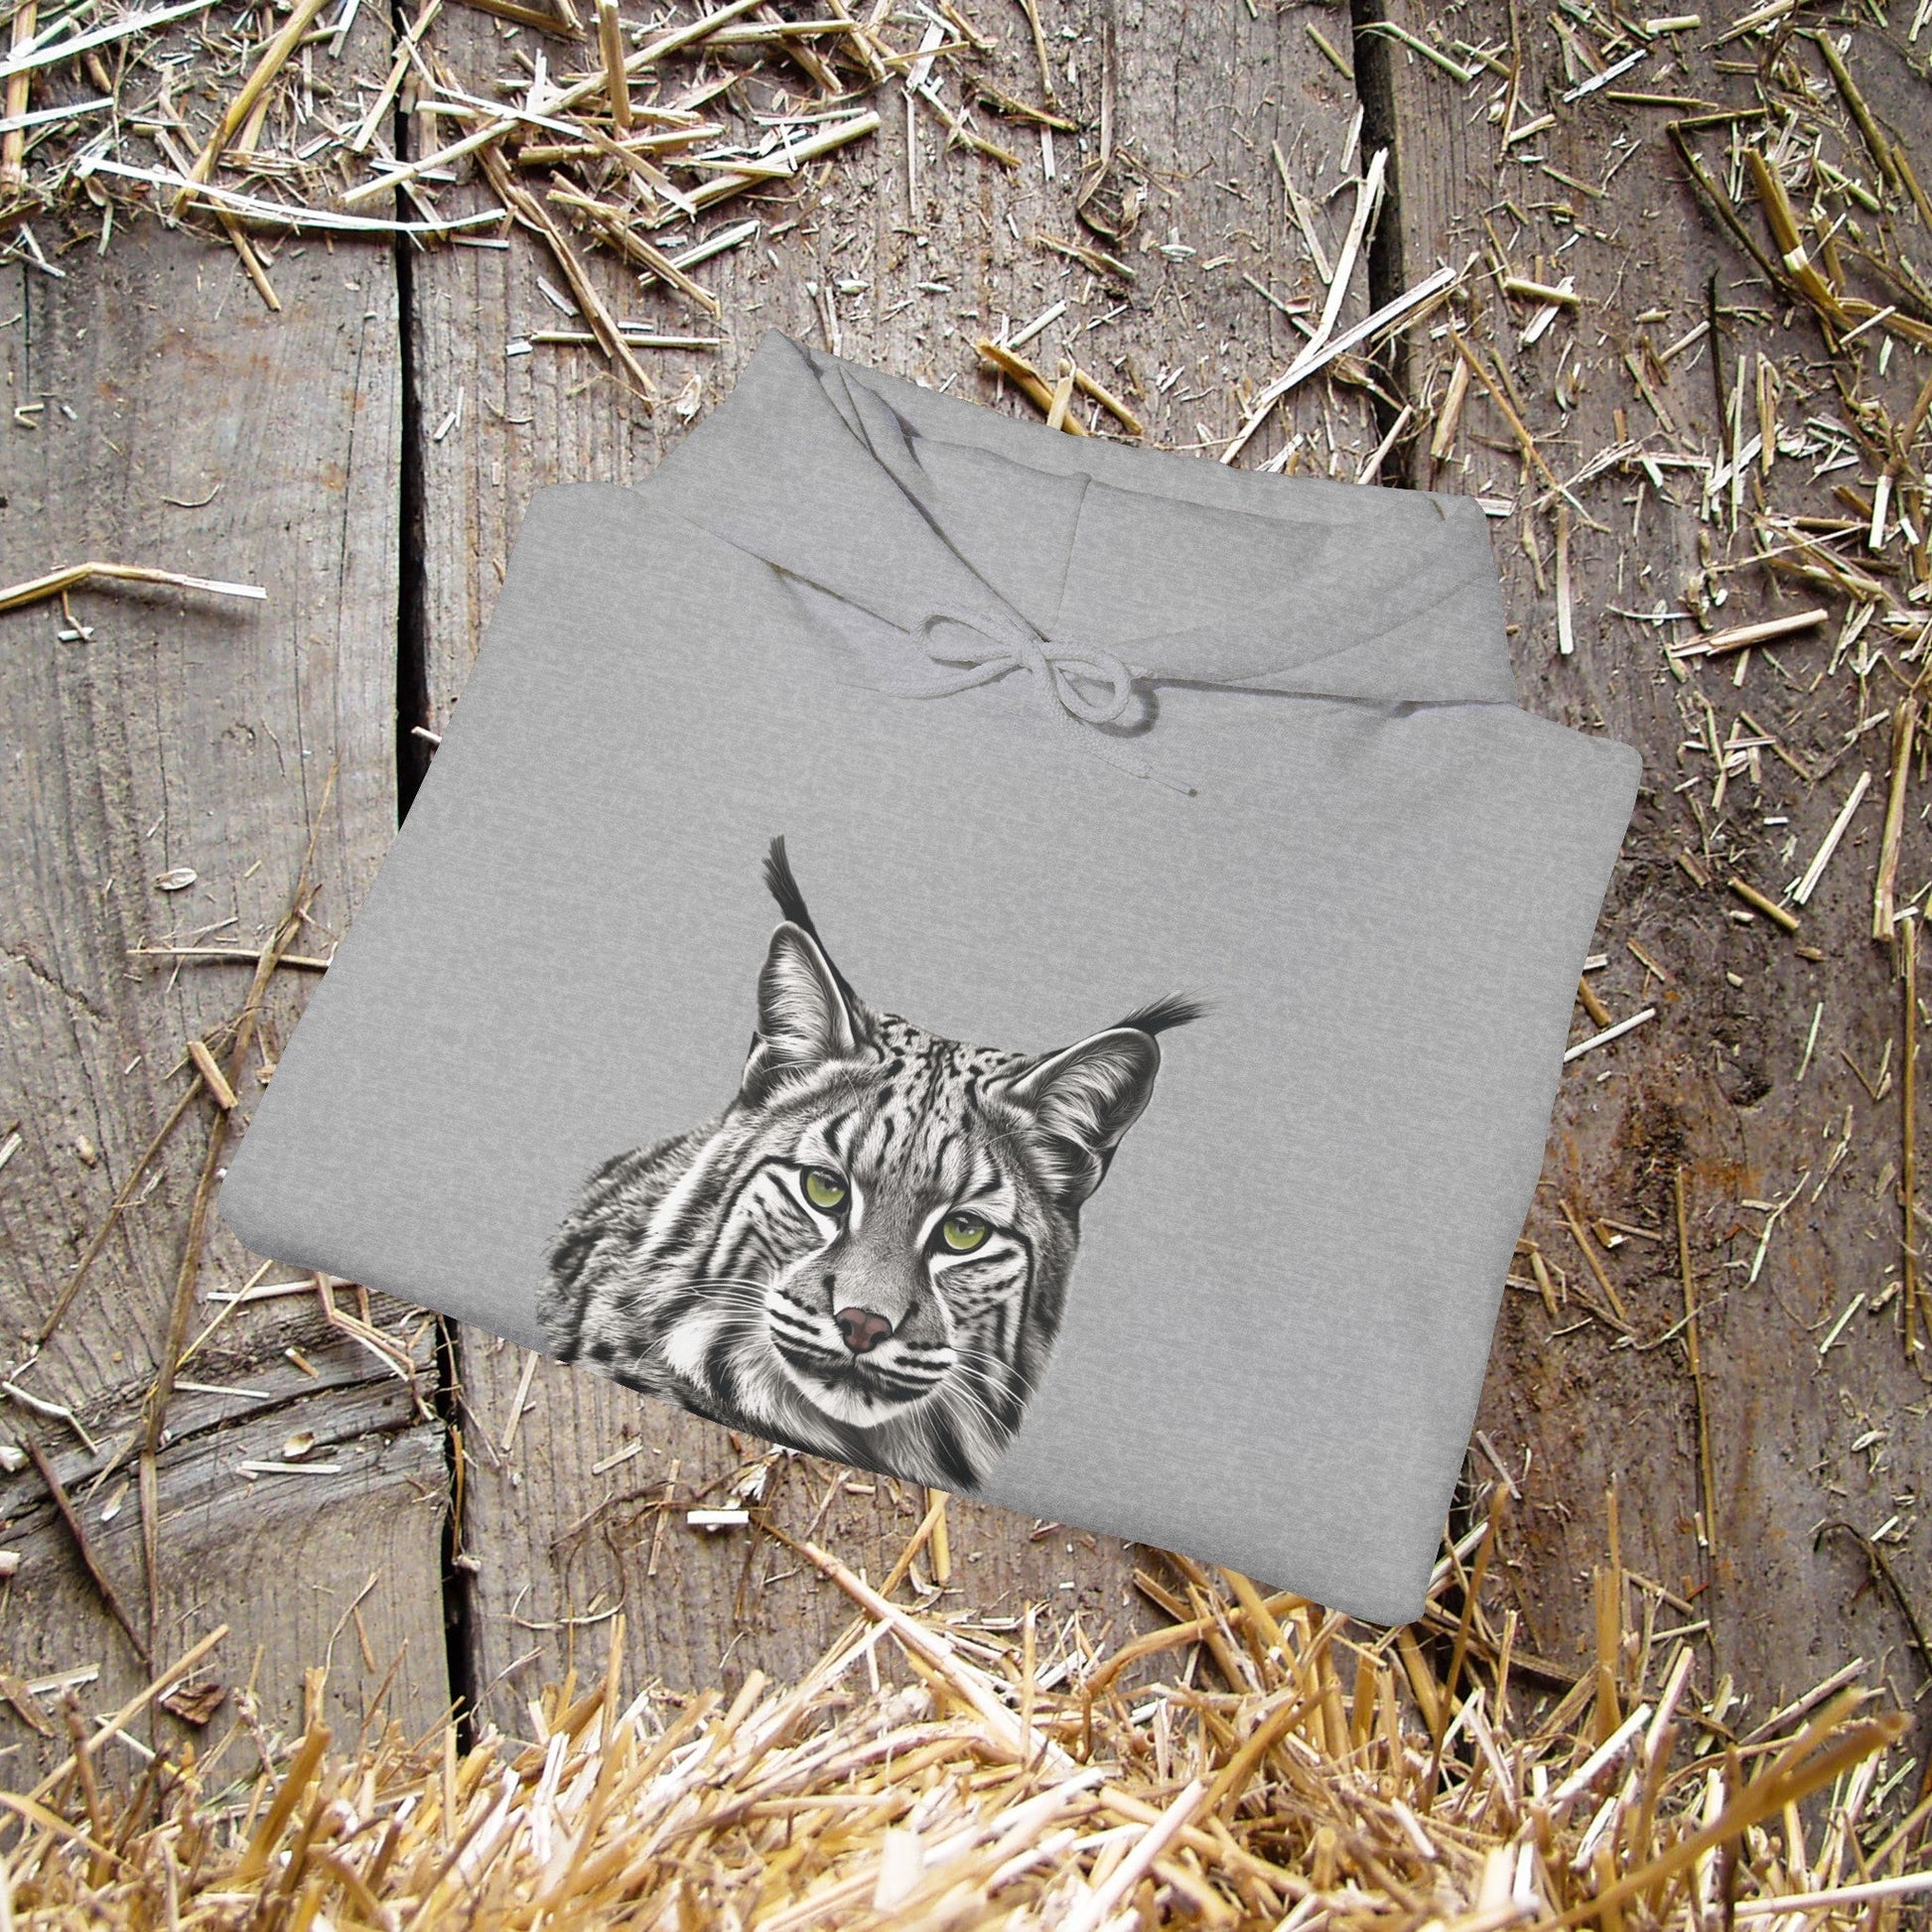 Bobcat Art Hoodie, Wildlife Appreciation and Camping Shirt - FlooredByArt